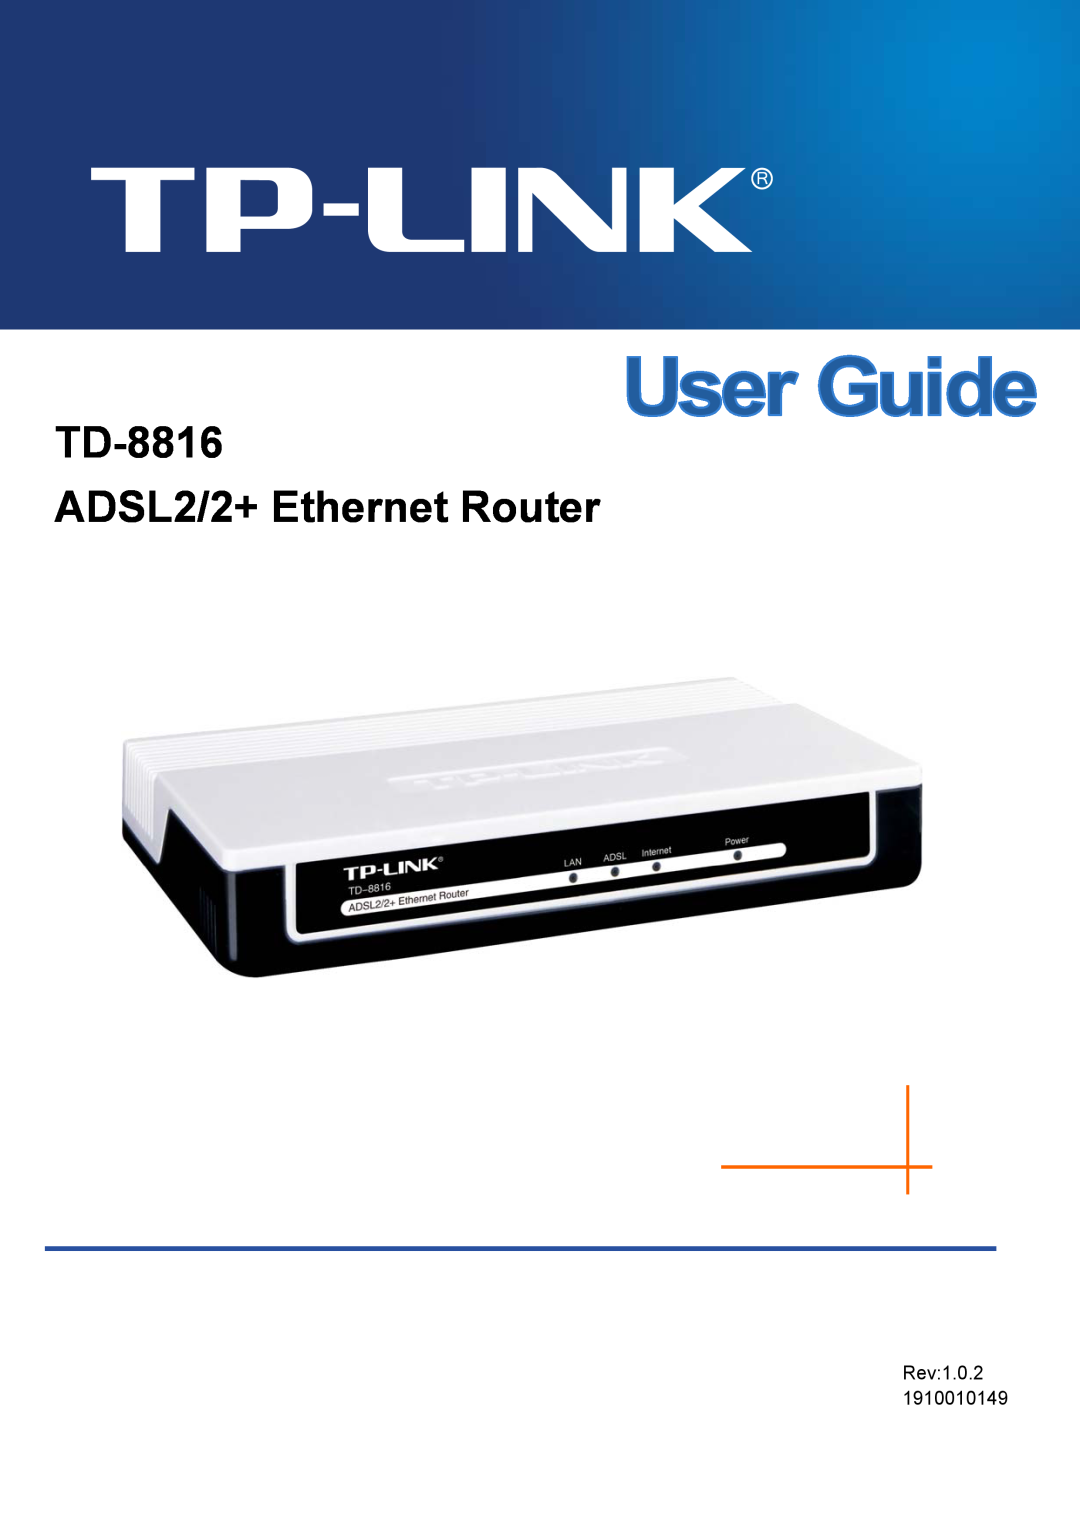 TP-Link manual TD-8816 ADSL2+ Modem Router, Rev2.0.0 1910010536 